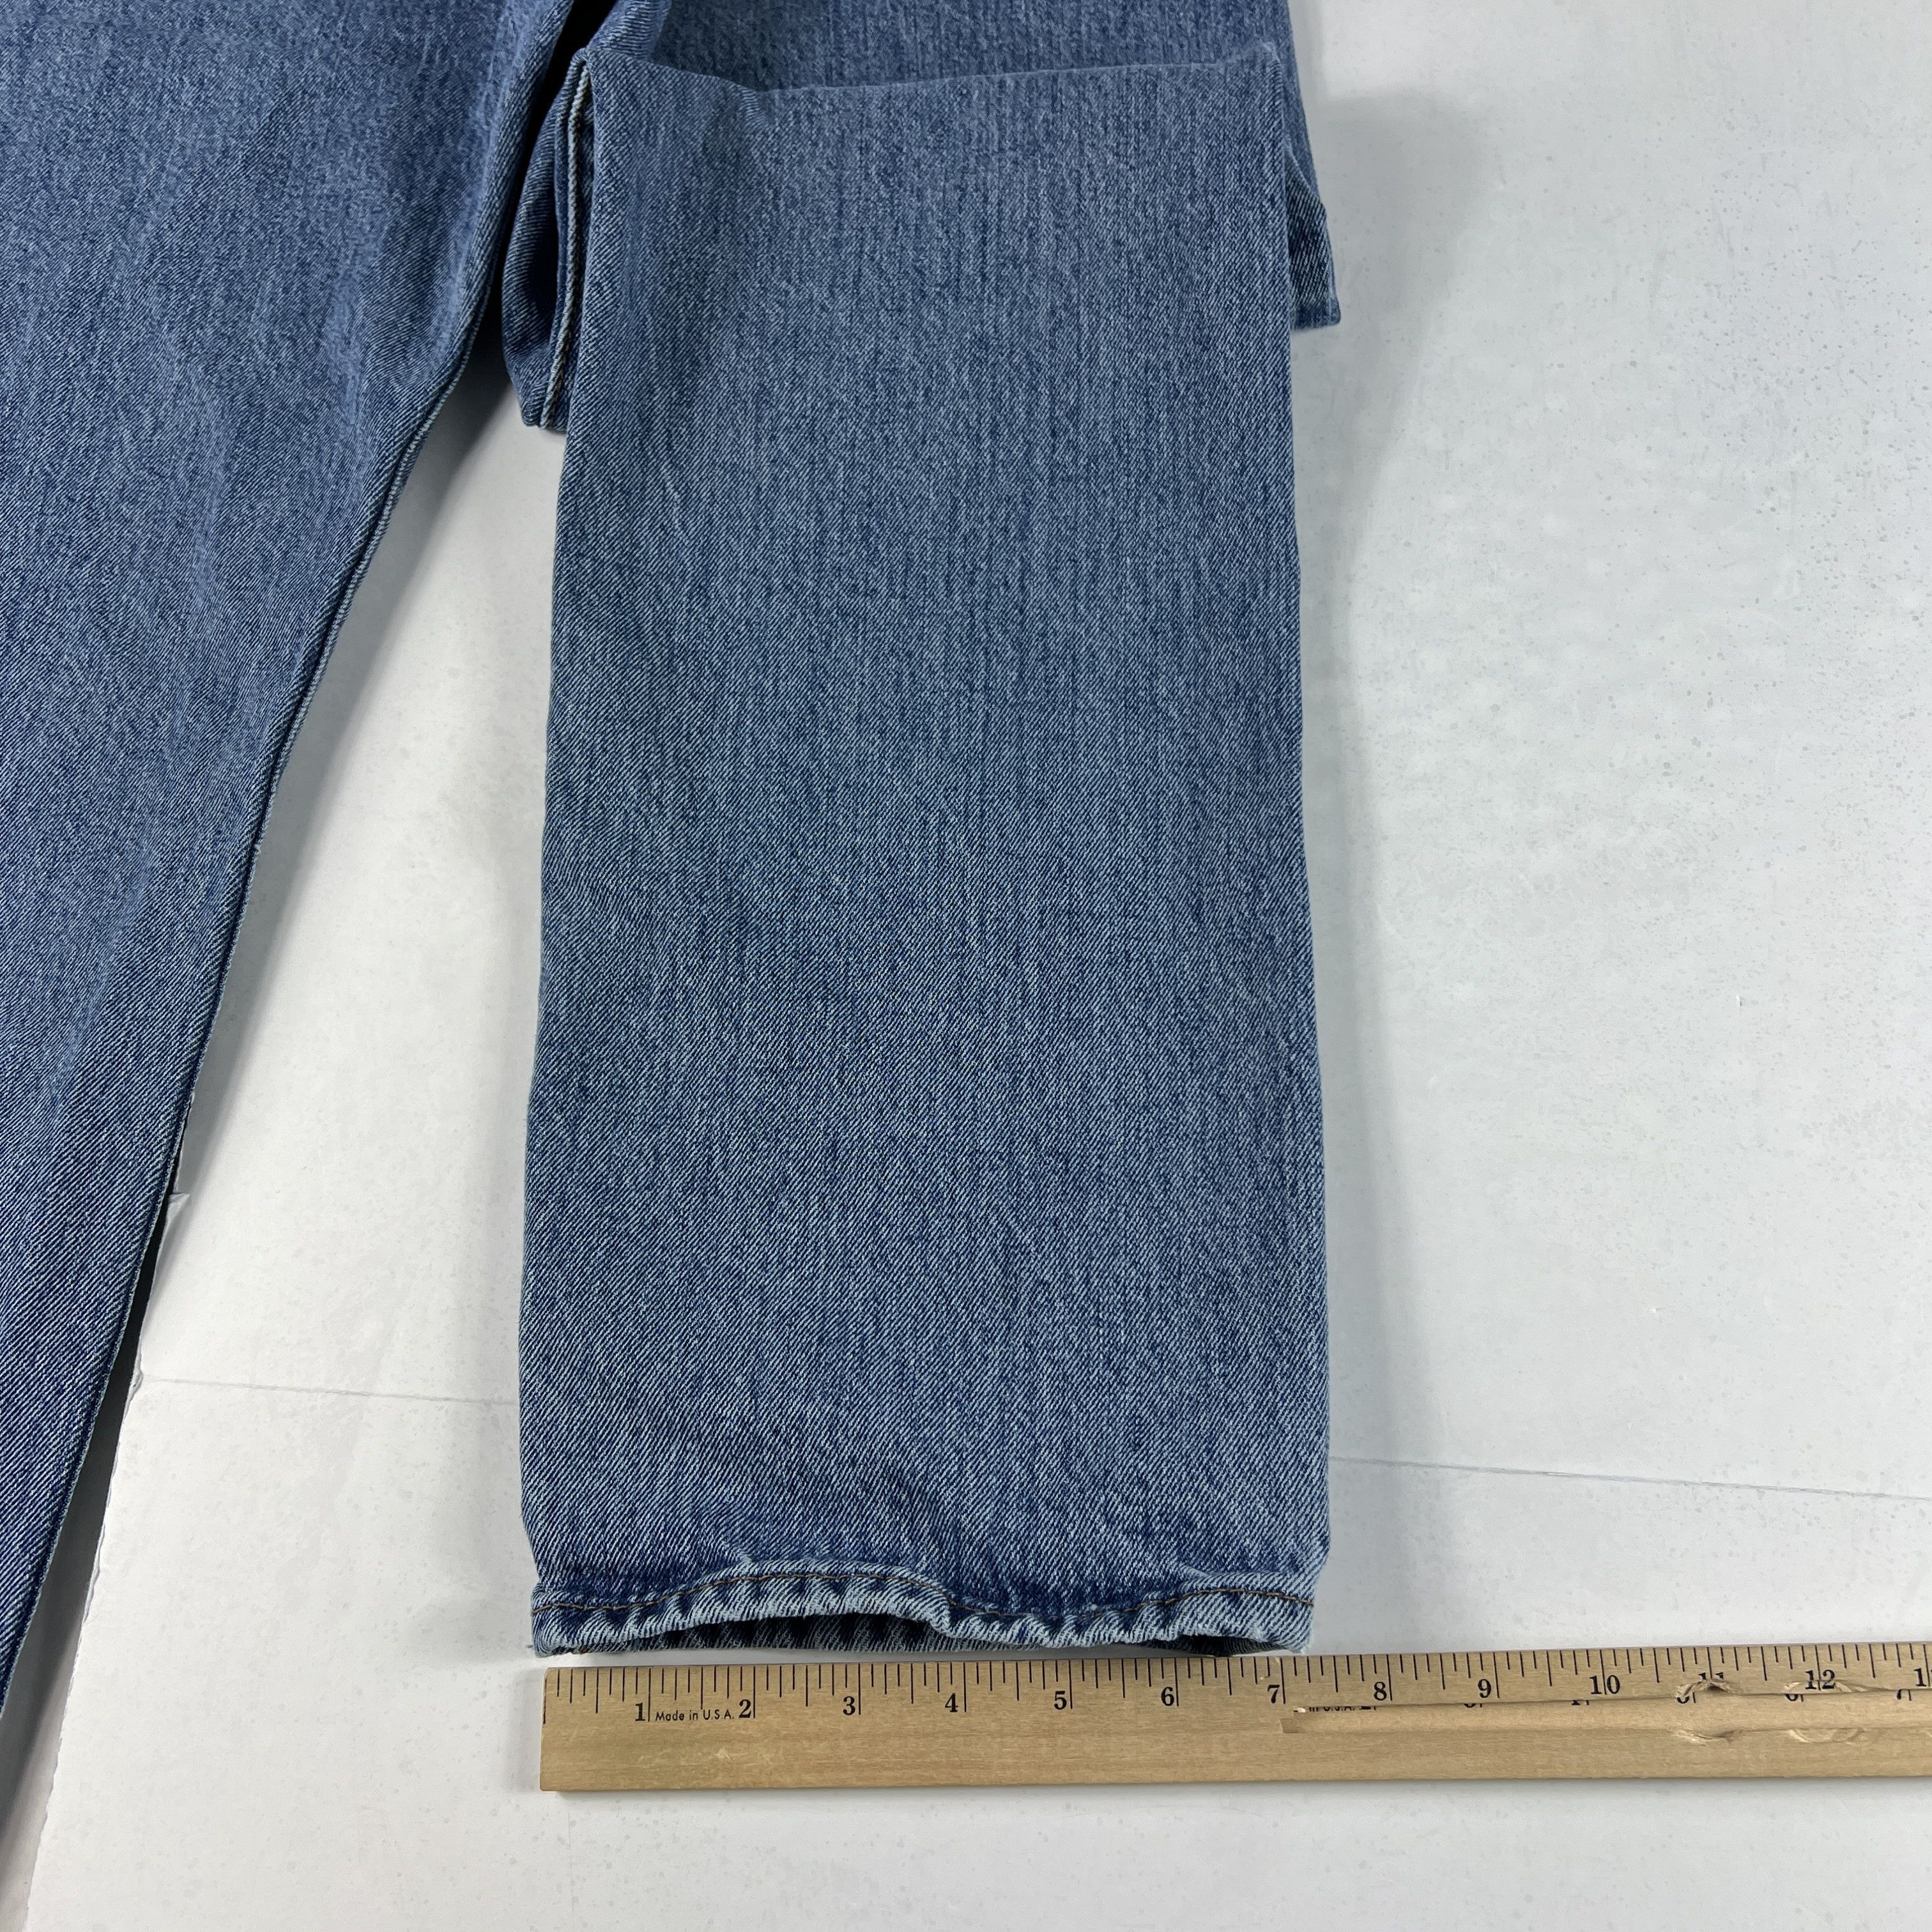 Levi's Levi's Jeans 501 XX Original Straight Blue Cotton Denim Size US 33 - 16 Thumbnail